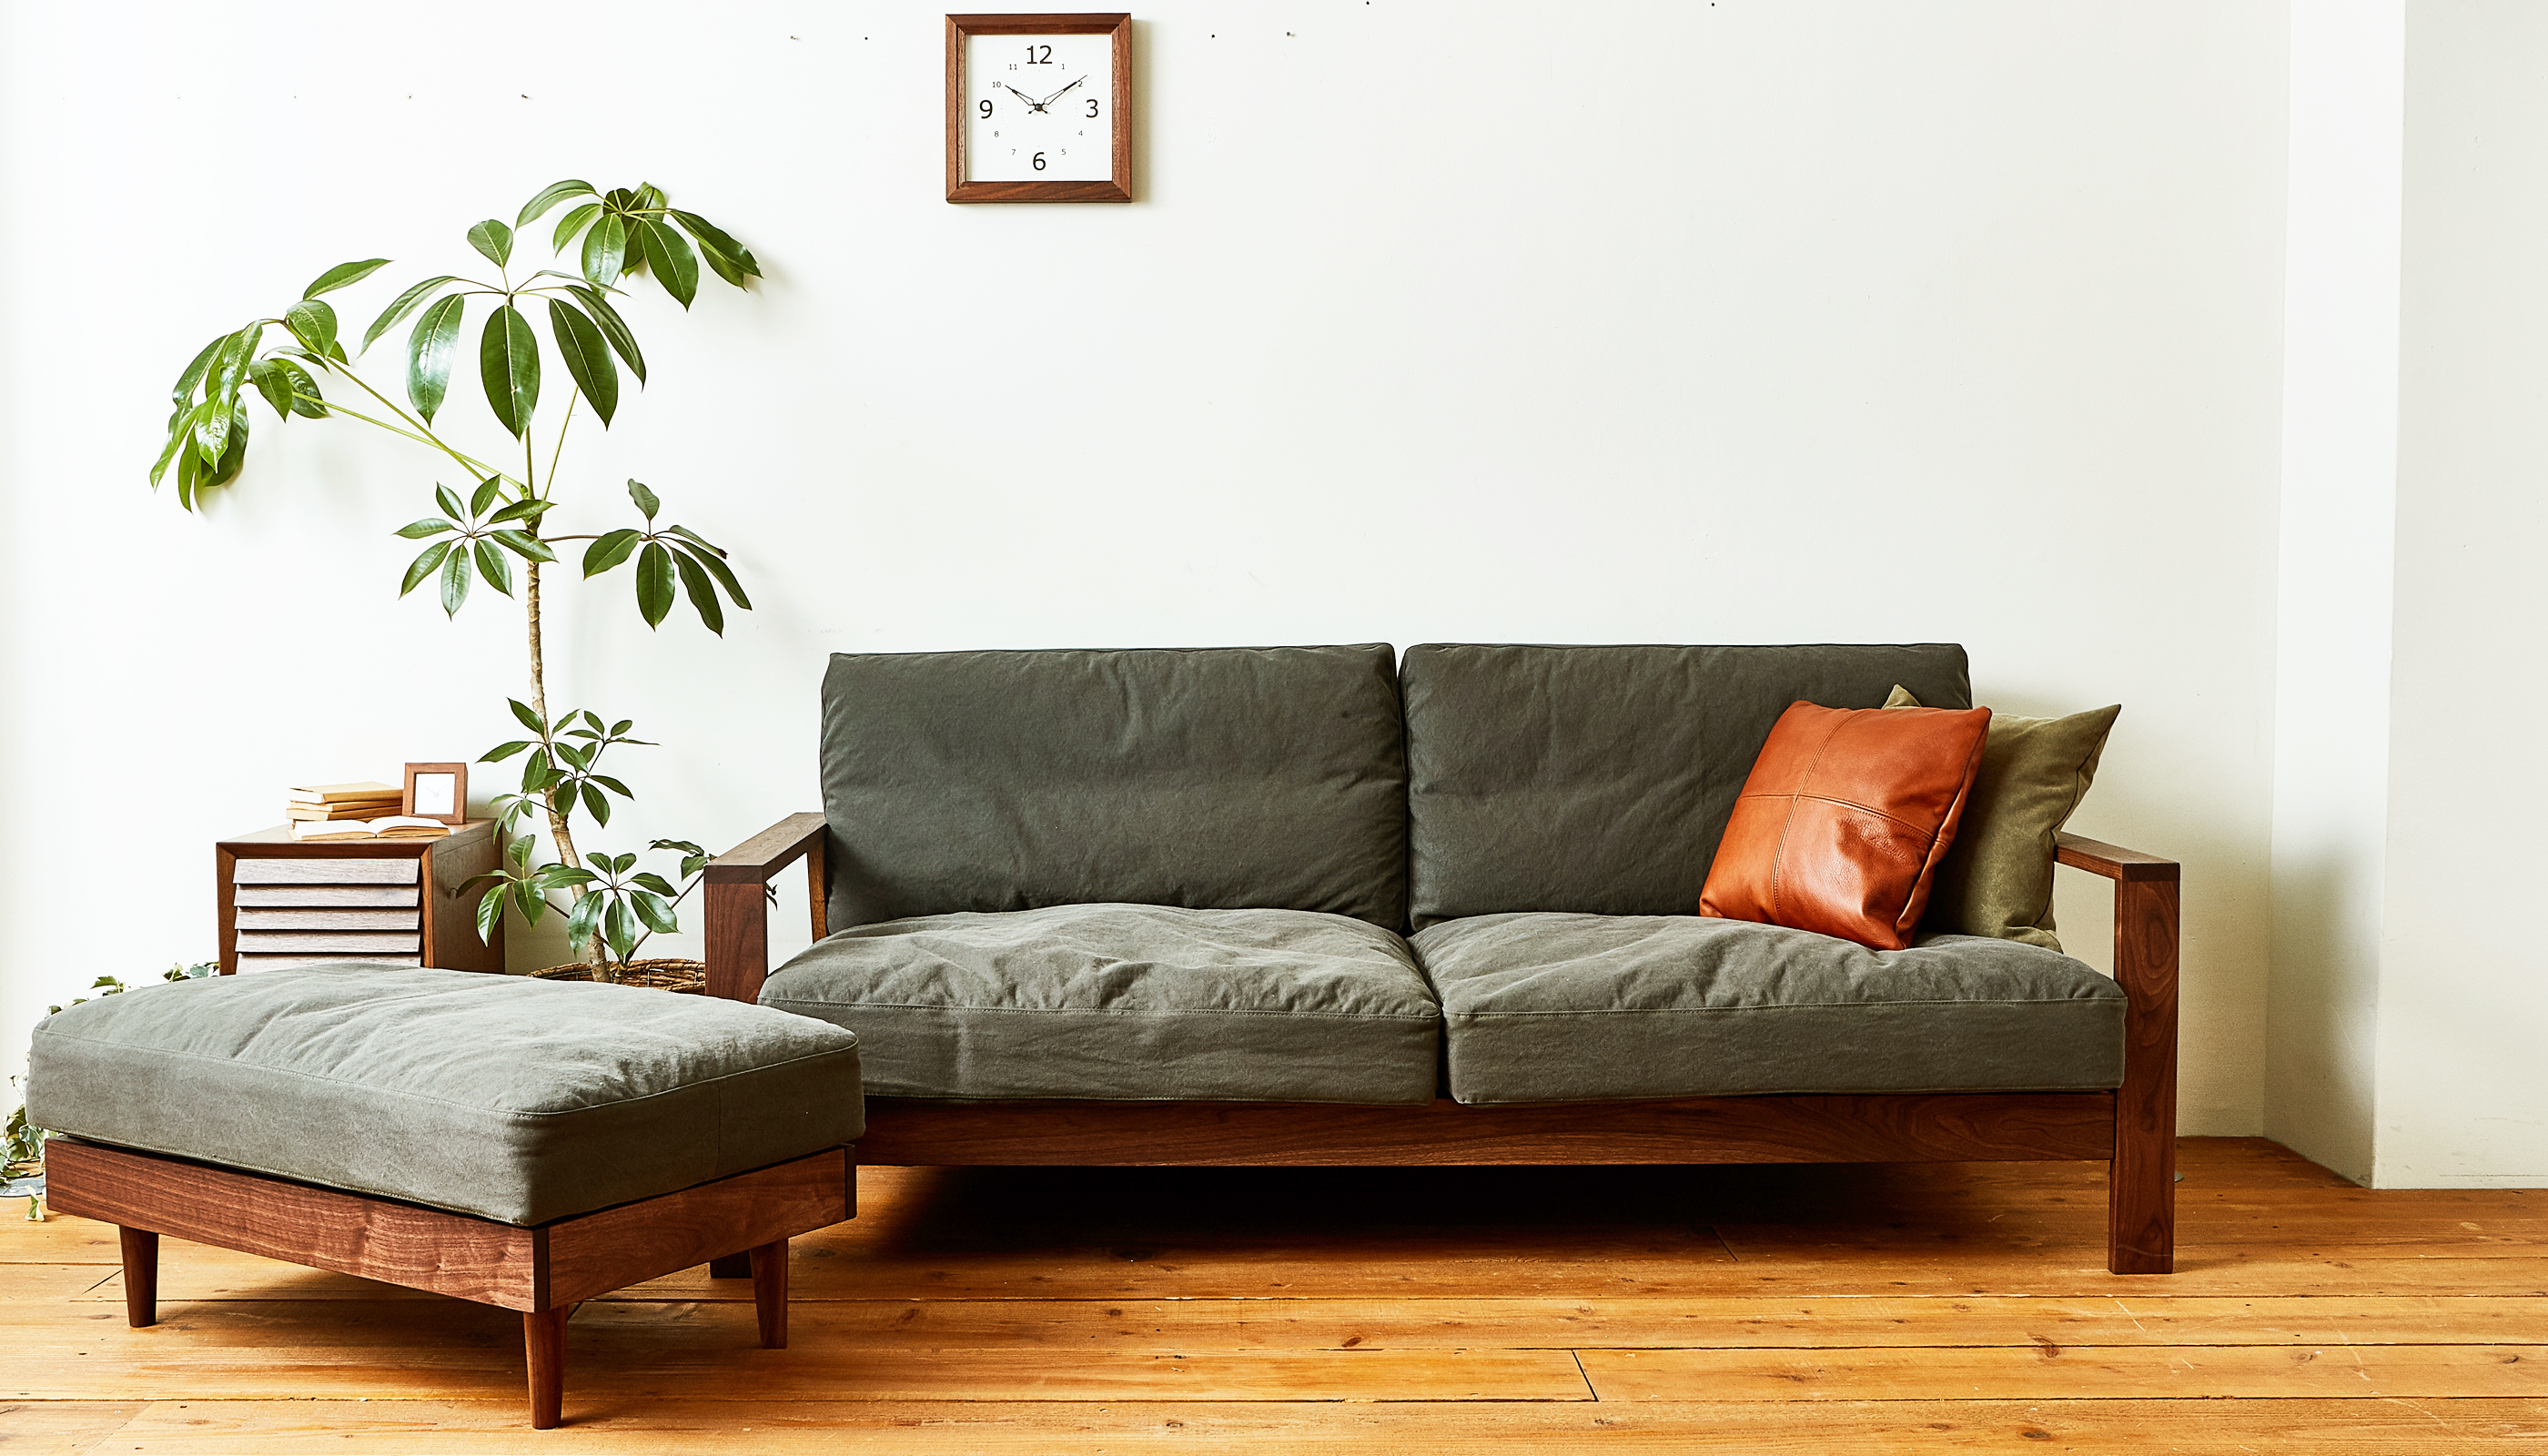 The sofa <span>ソファ</span>